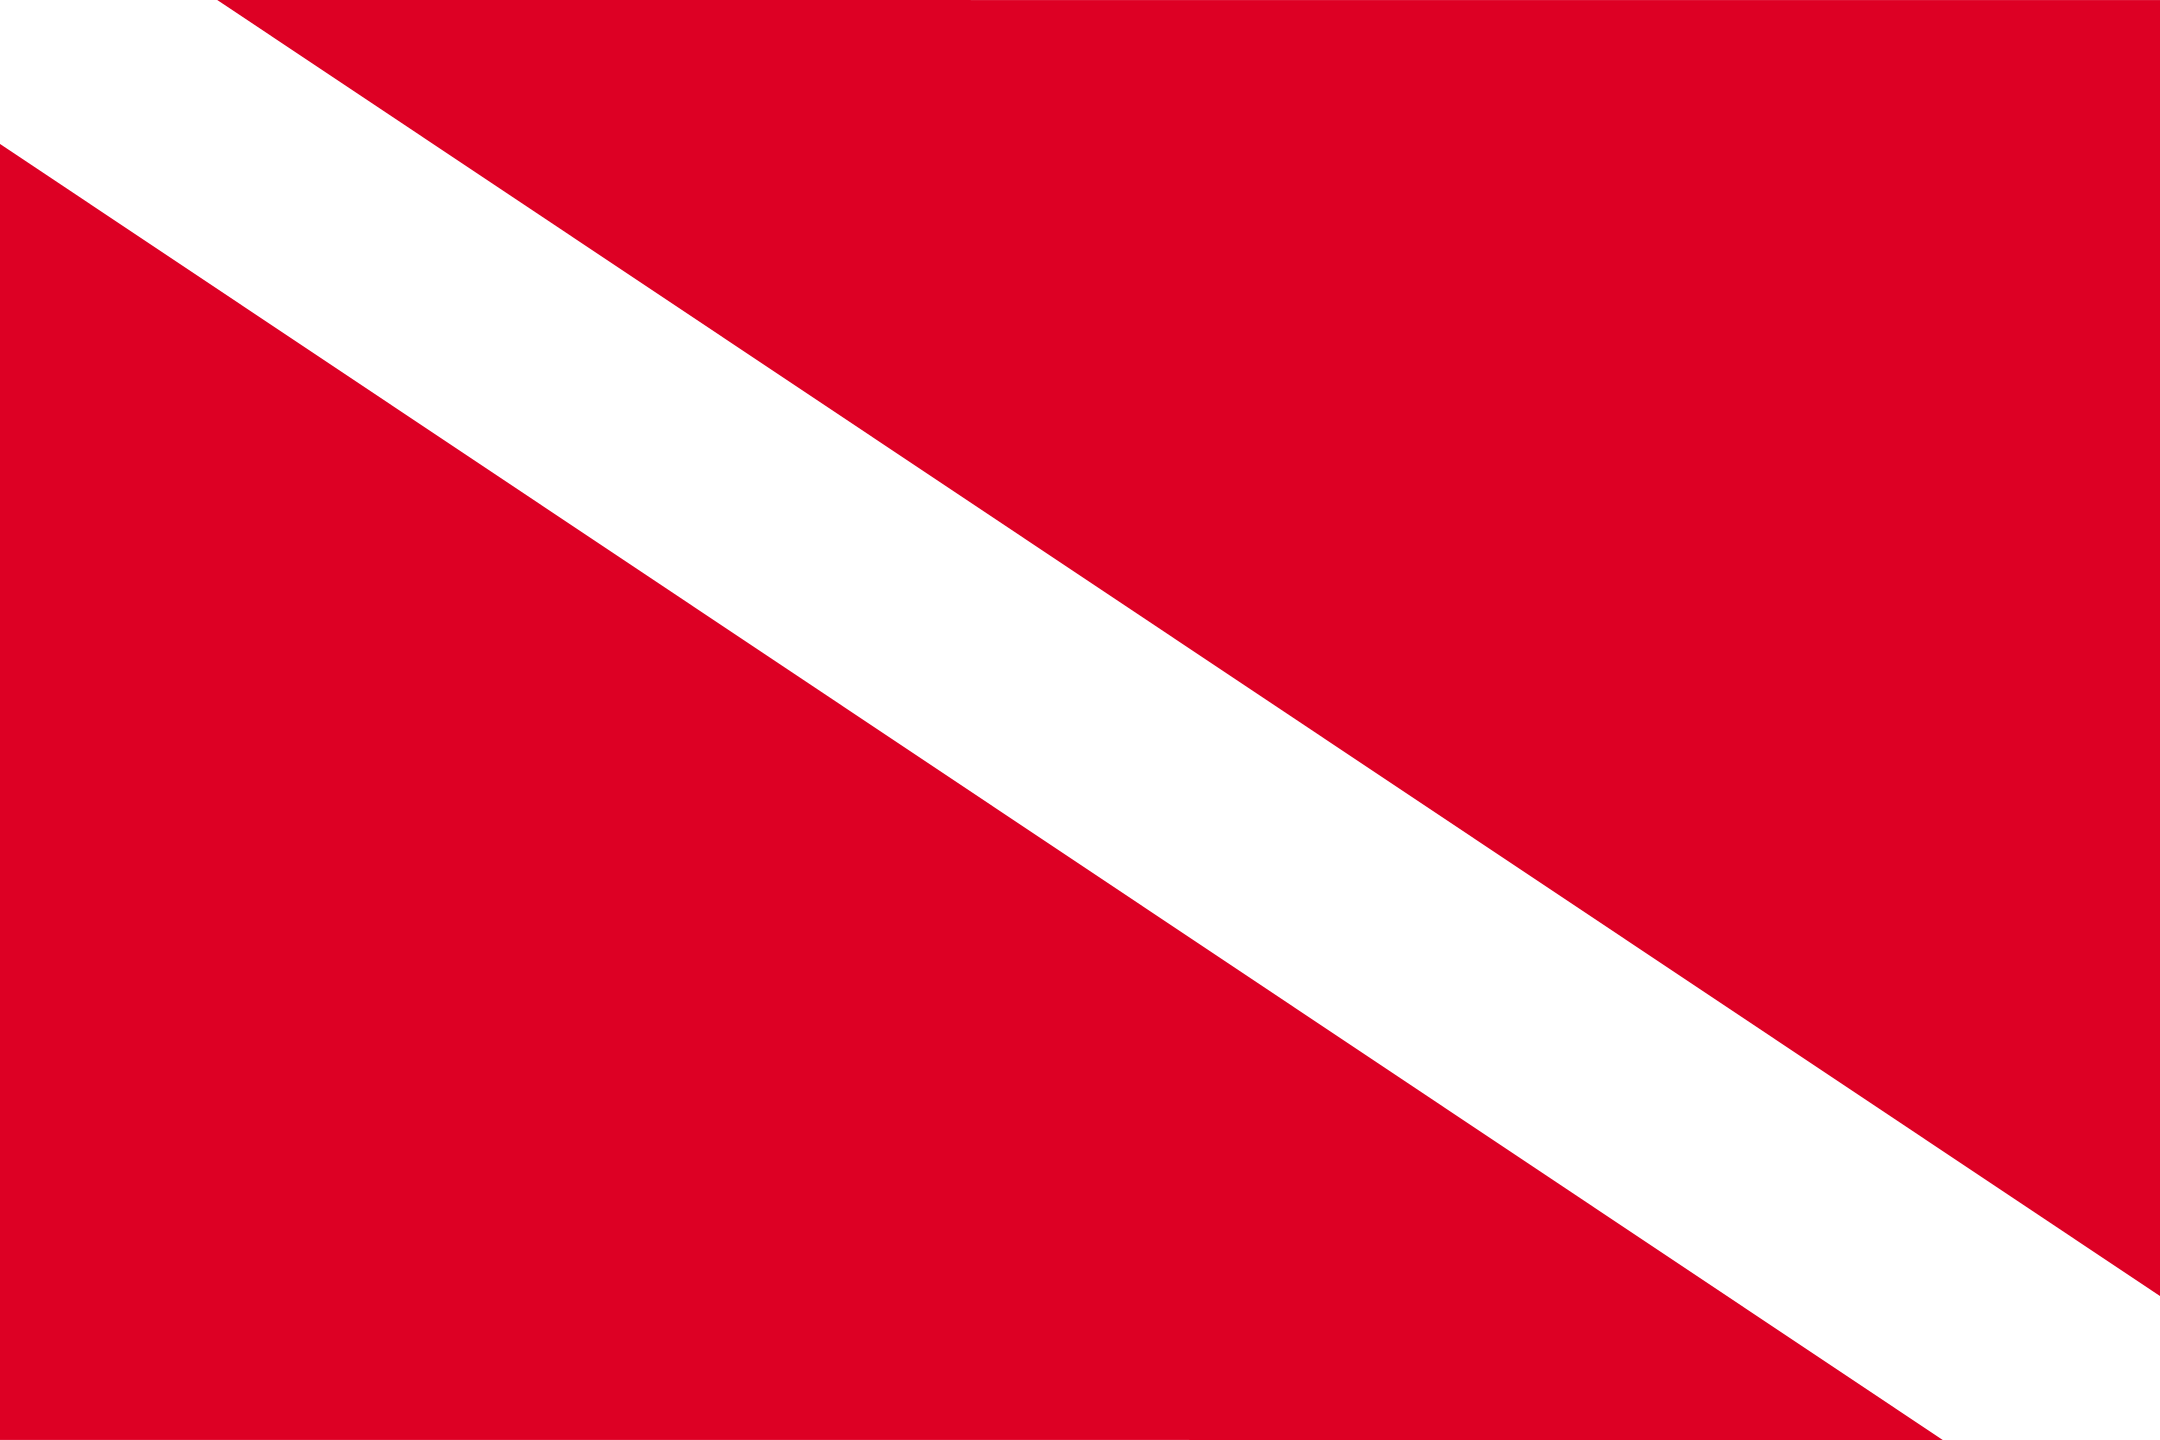 Bandeira de Mergulho.